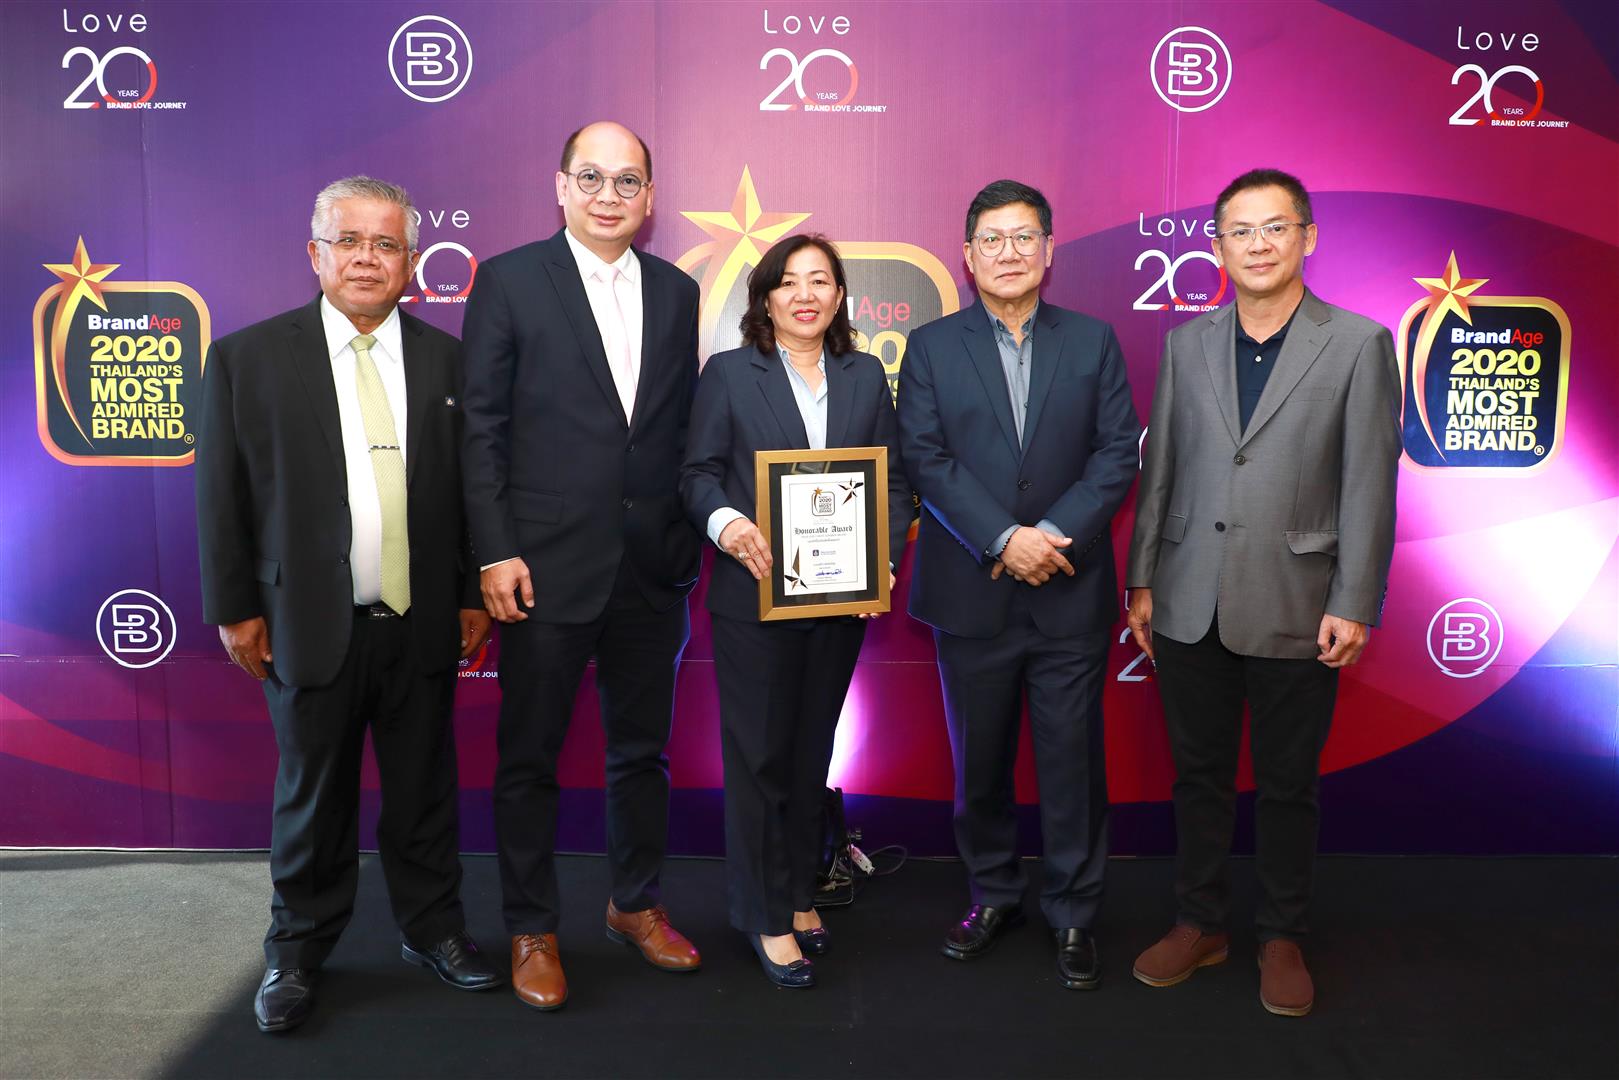 วิริยะประกันภัย รับรางวัล Thailand's Most Admired Brand ผู้นำกลุ่มประกันภัย ครองความน่าเชื่อถือสูงสุด 17 ปี